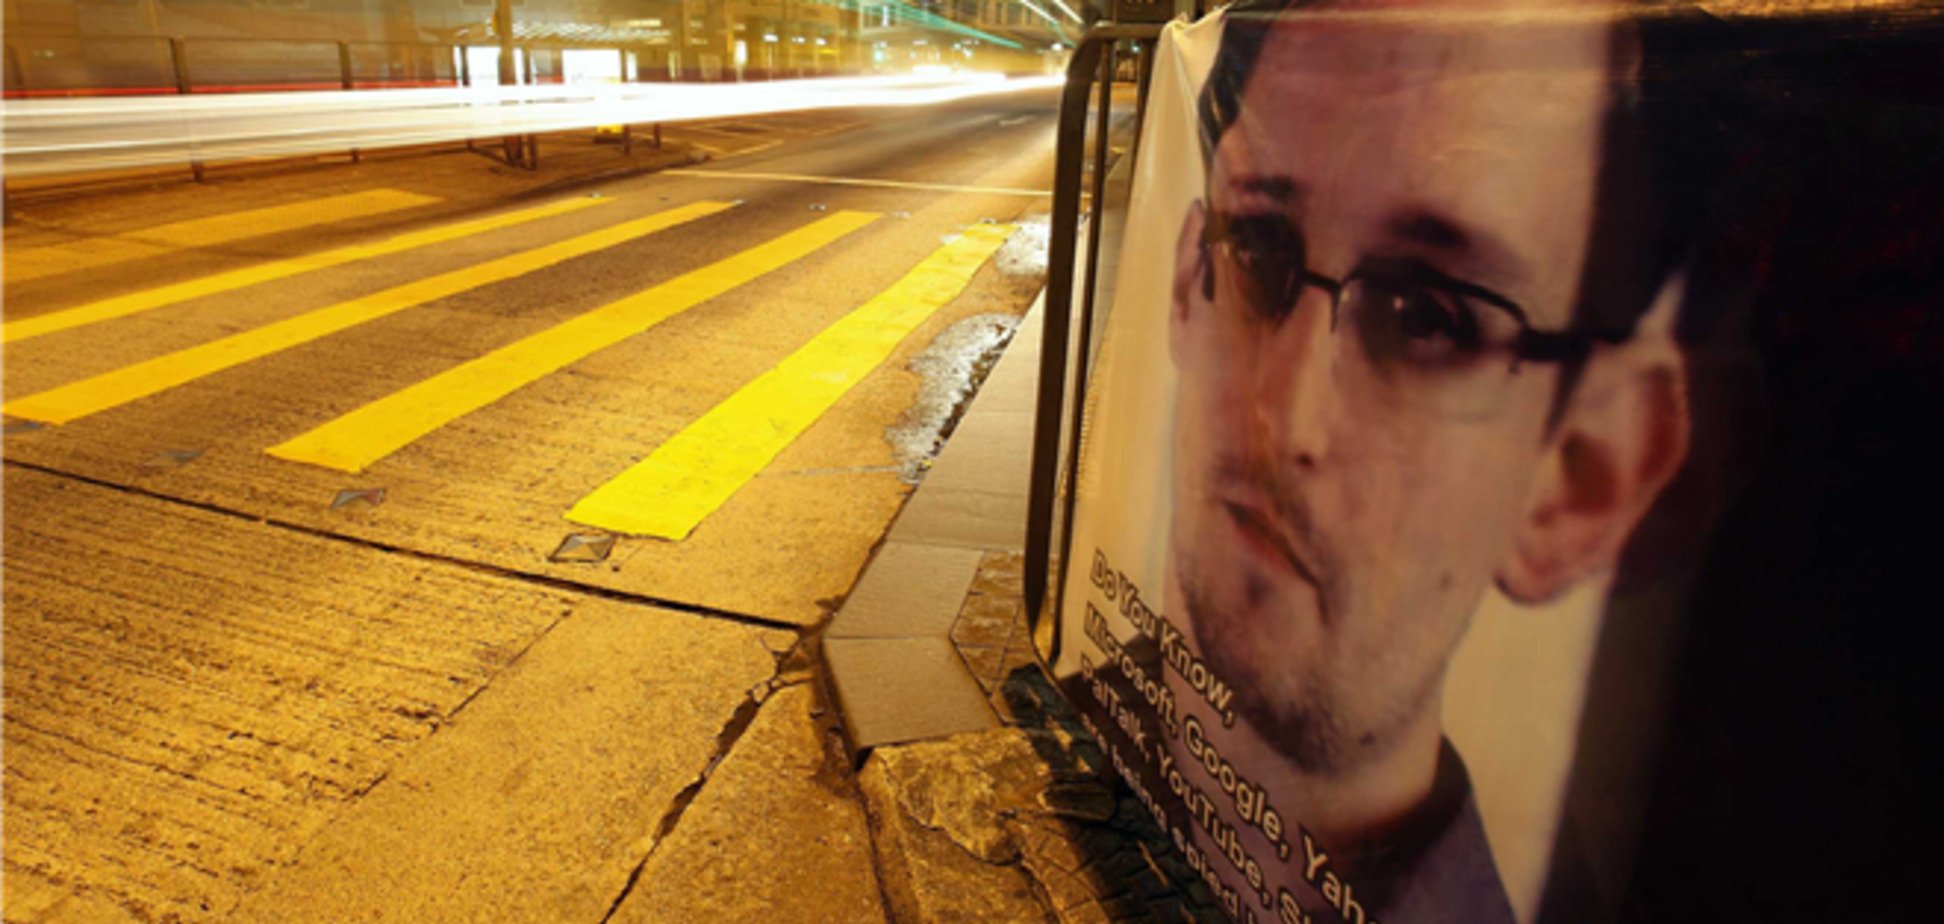 Москва прояснила Вашингтону ситуацию со Сноуденом